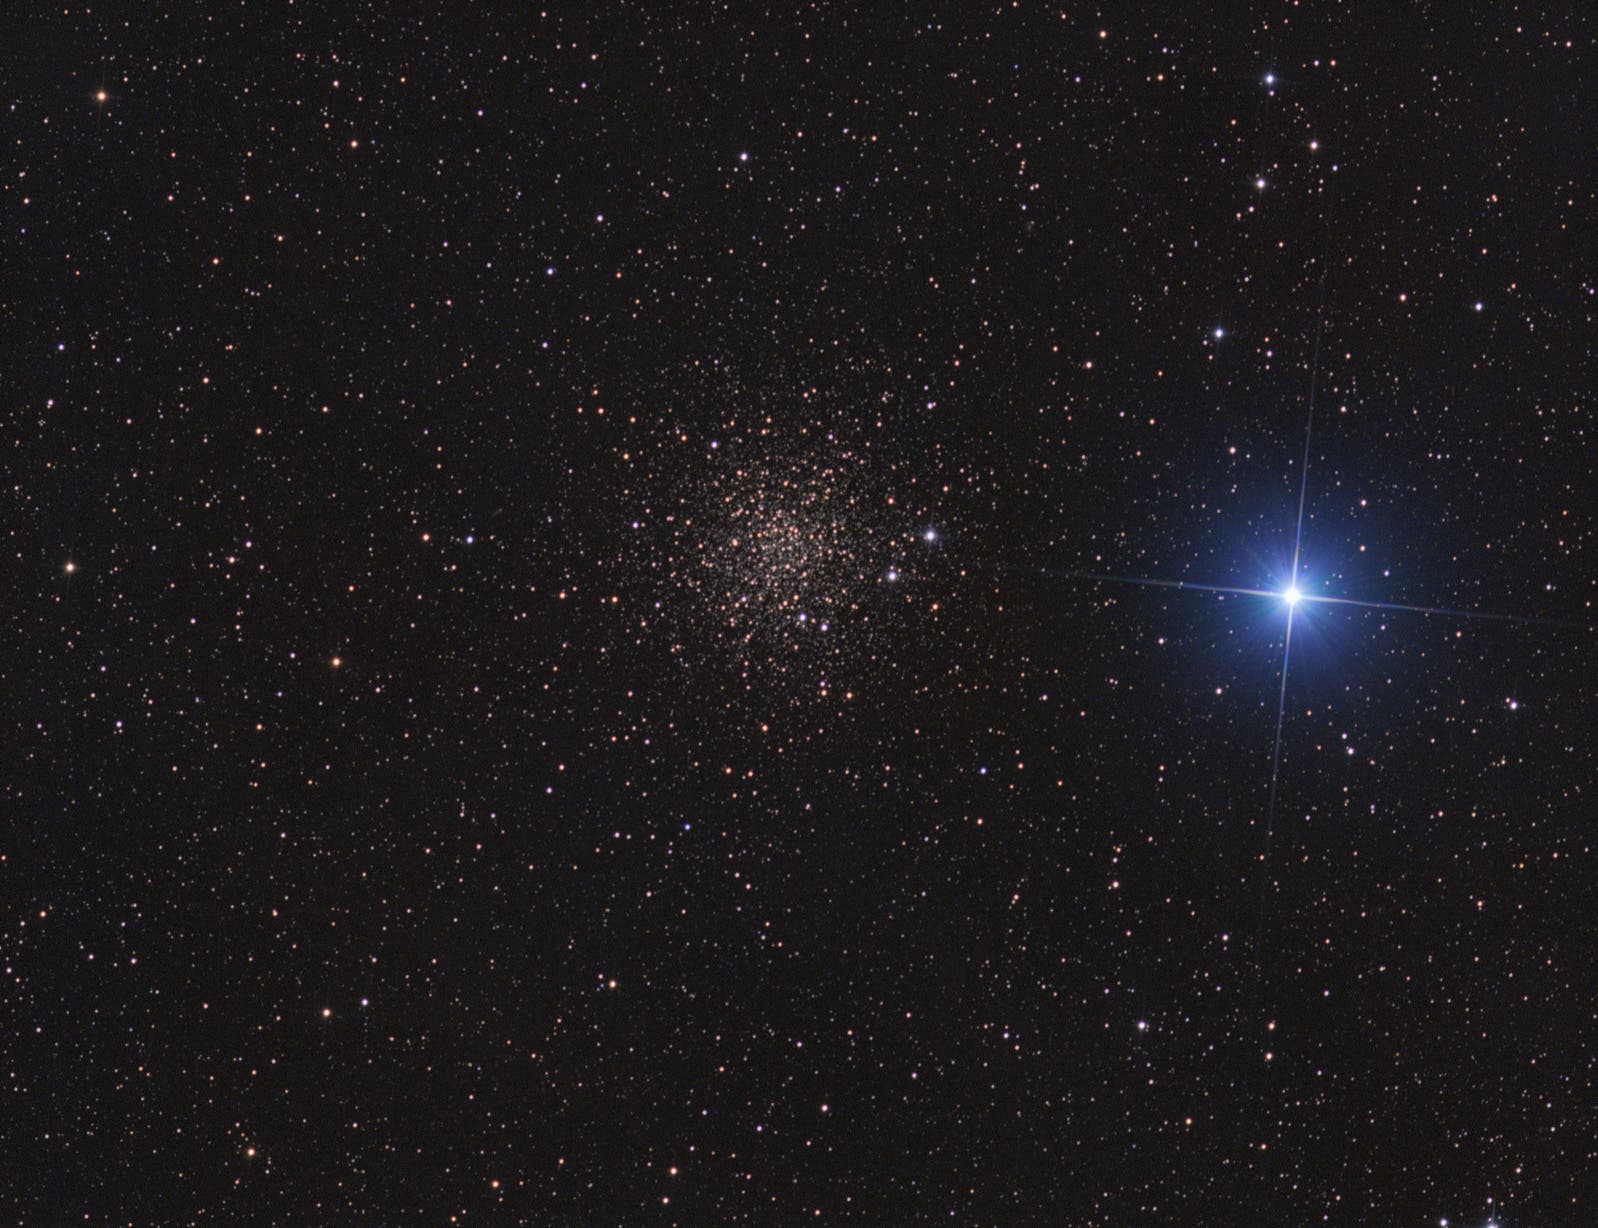 NGC 6366